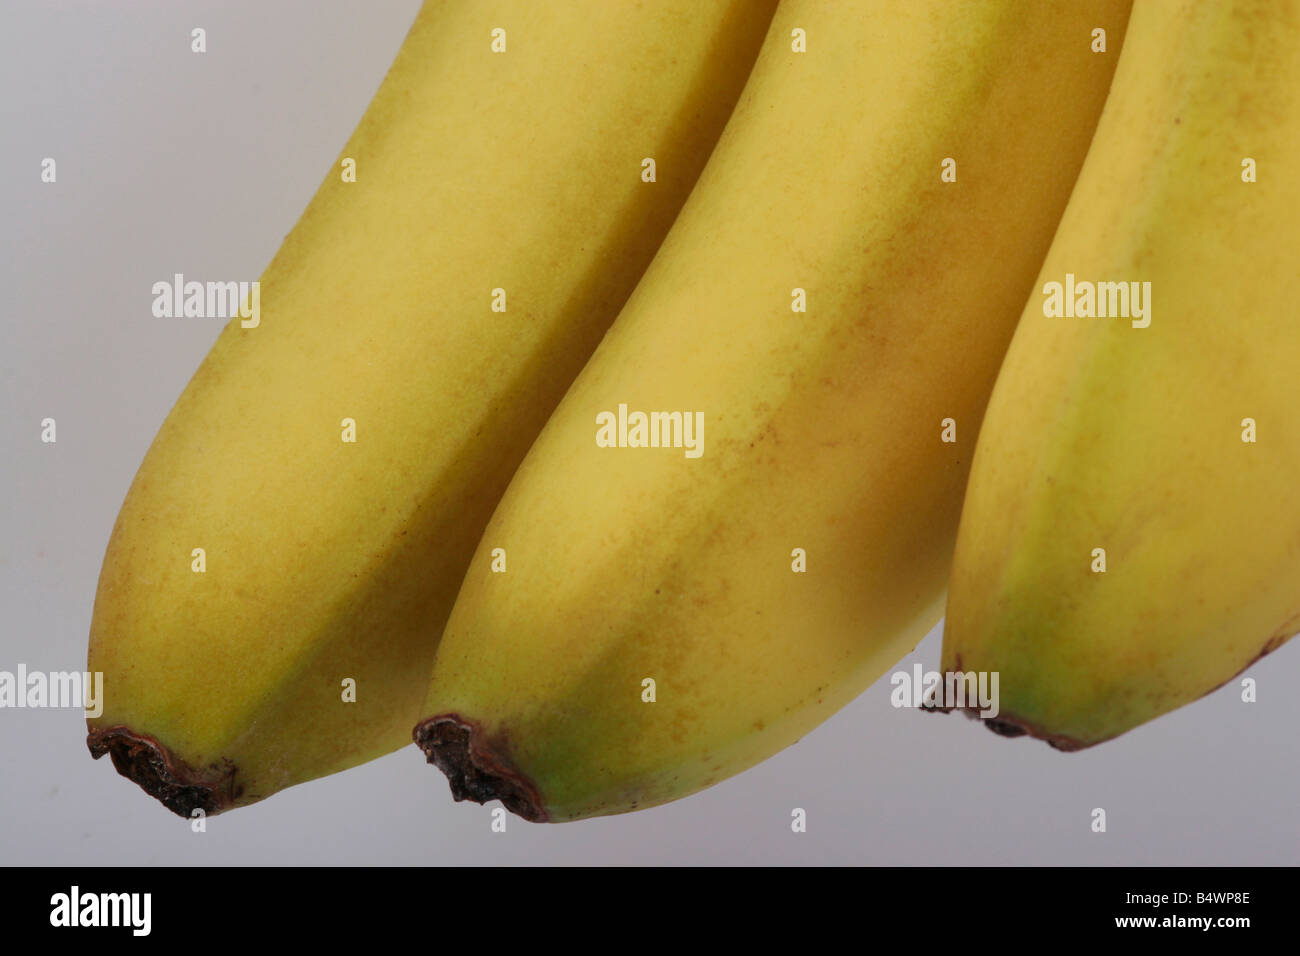 three bananas Stock Photo